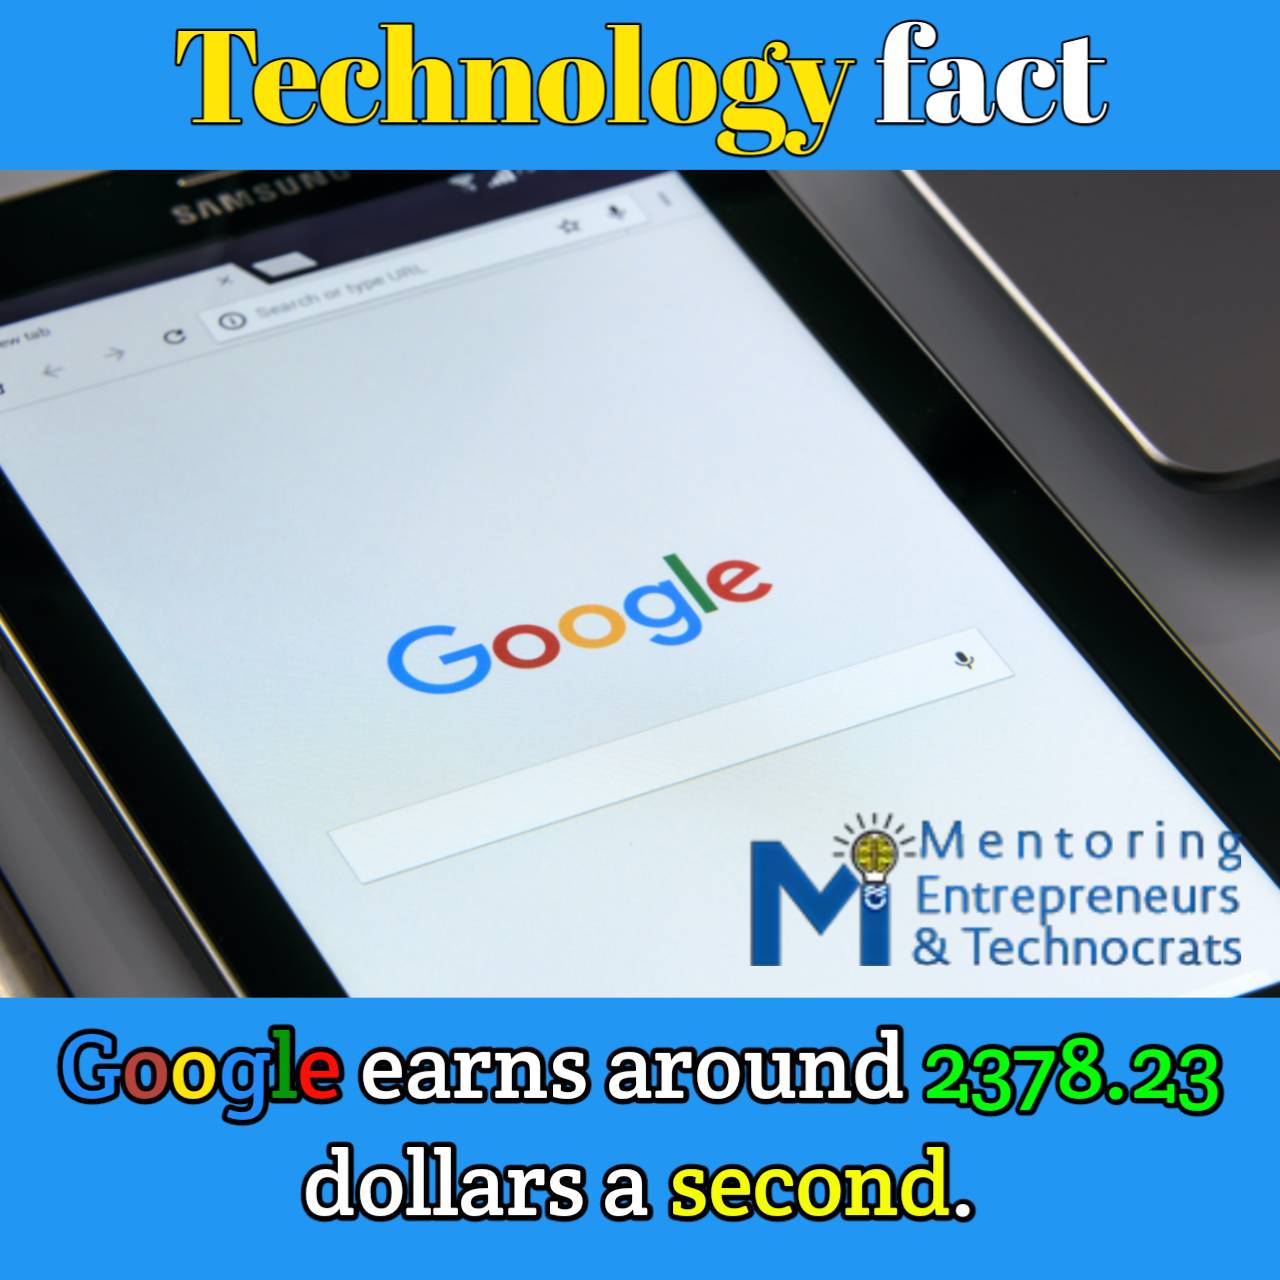 Google Technology Fact